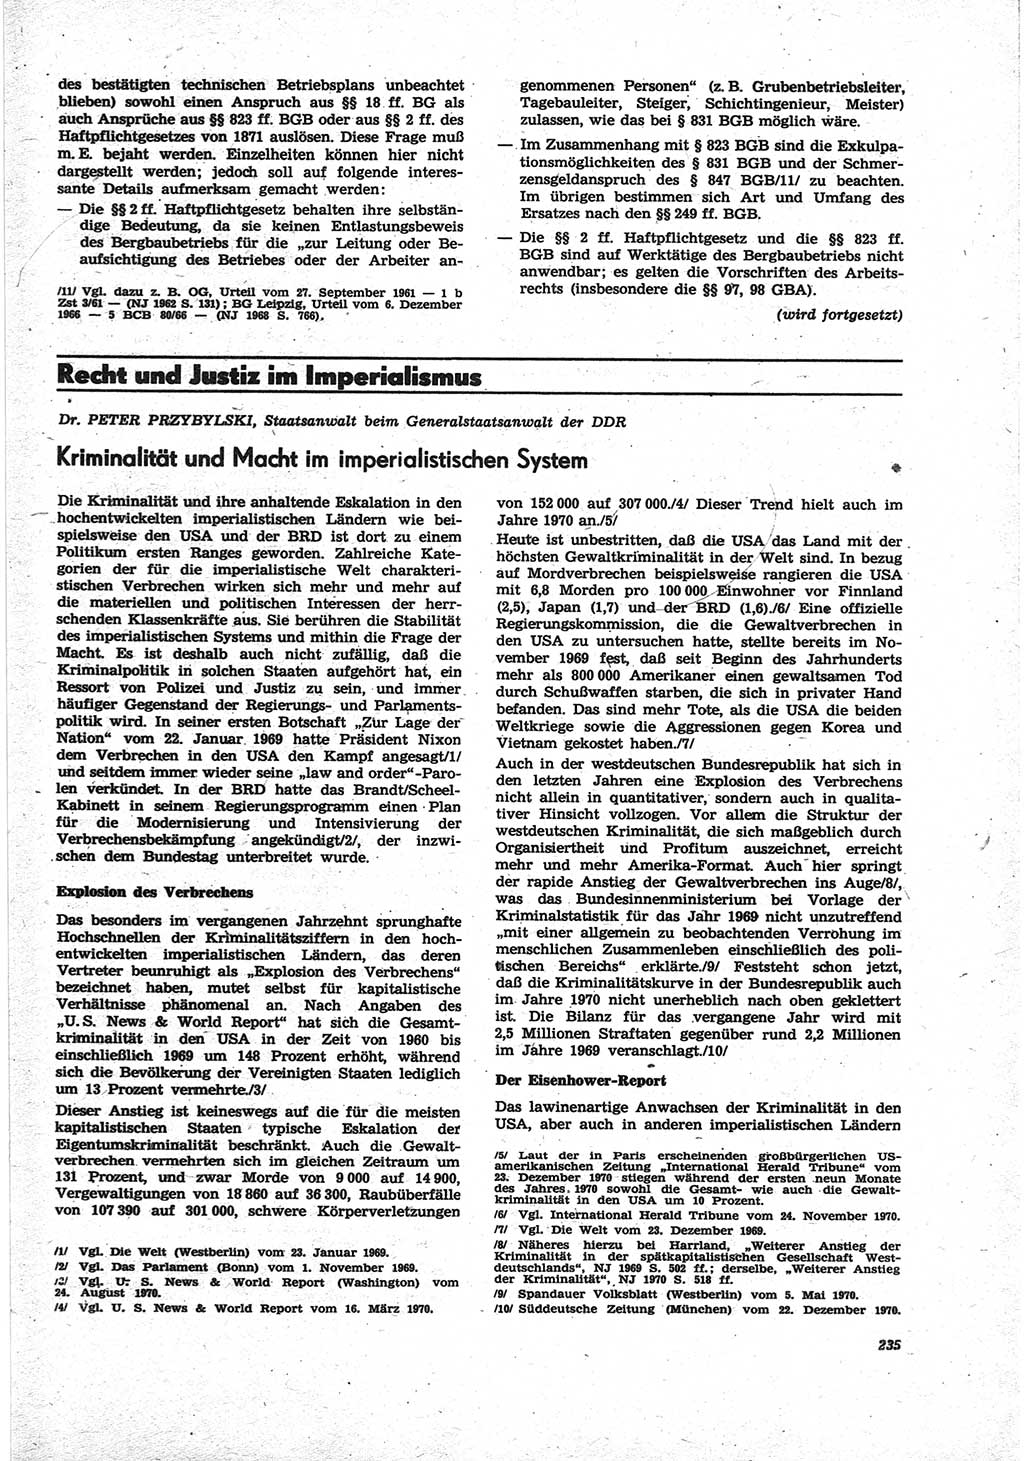 Neue Justiz (NJ), Zeitschrift für Recht und Rechtswissenschaft [Deutsche Demokratische Republik (DDR)], 25. Jahrgang 1971, Seite 235 (NJ DDR 1971, S. 235)